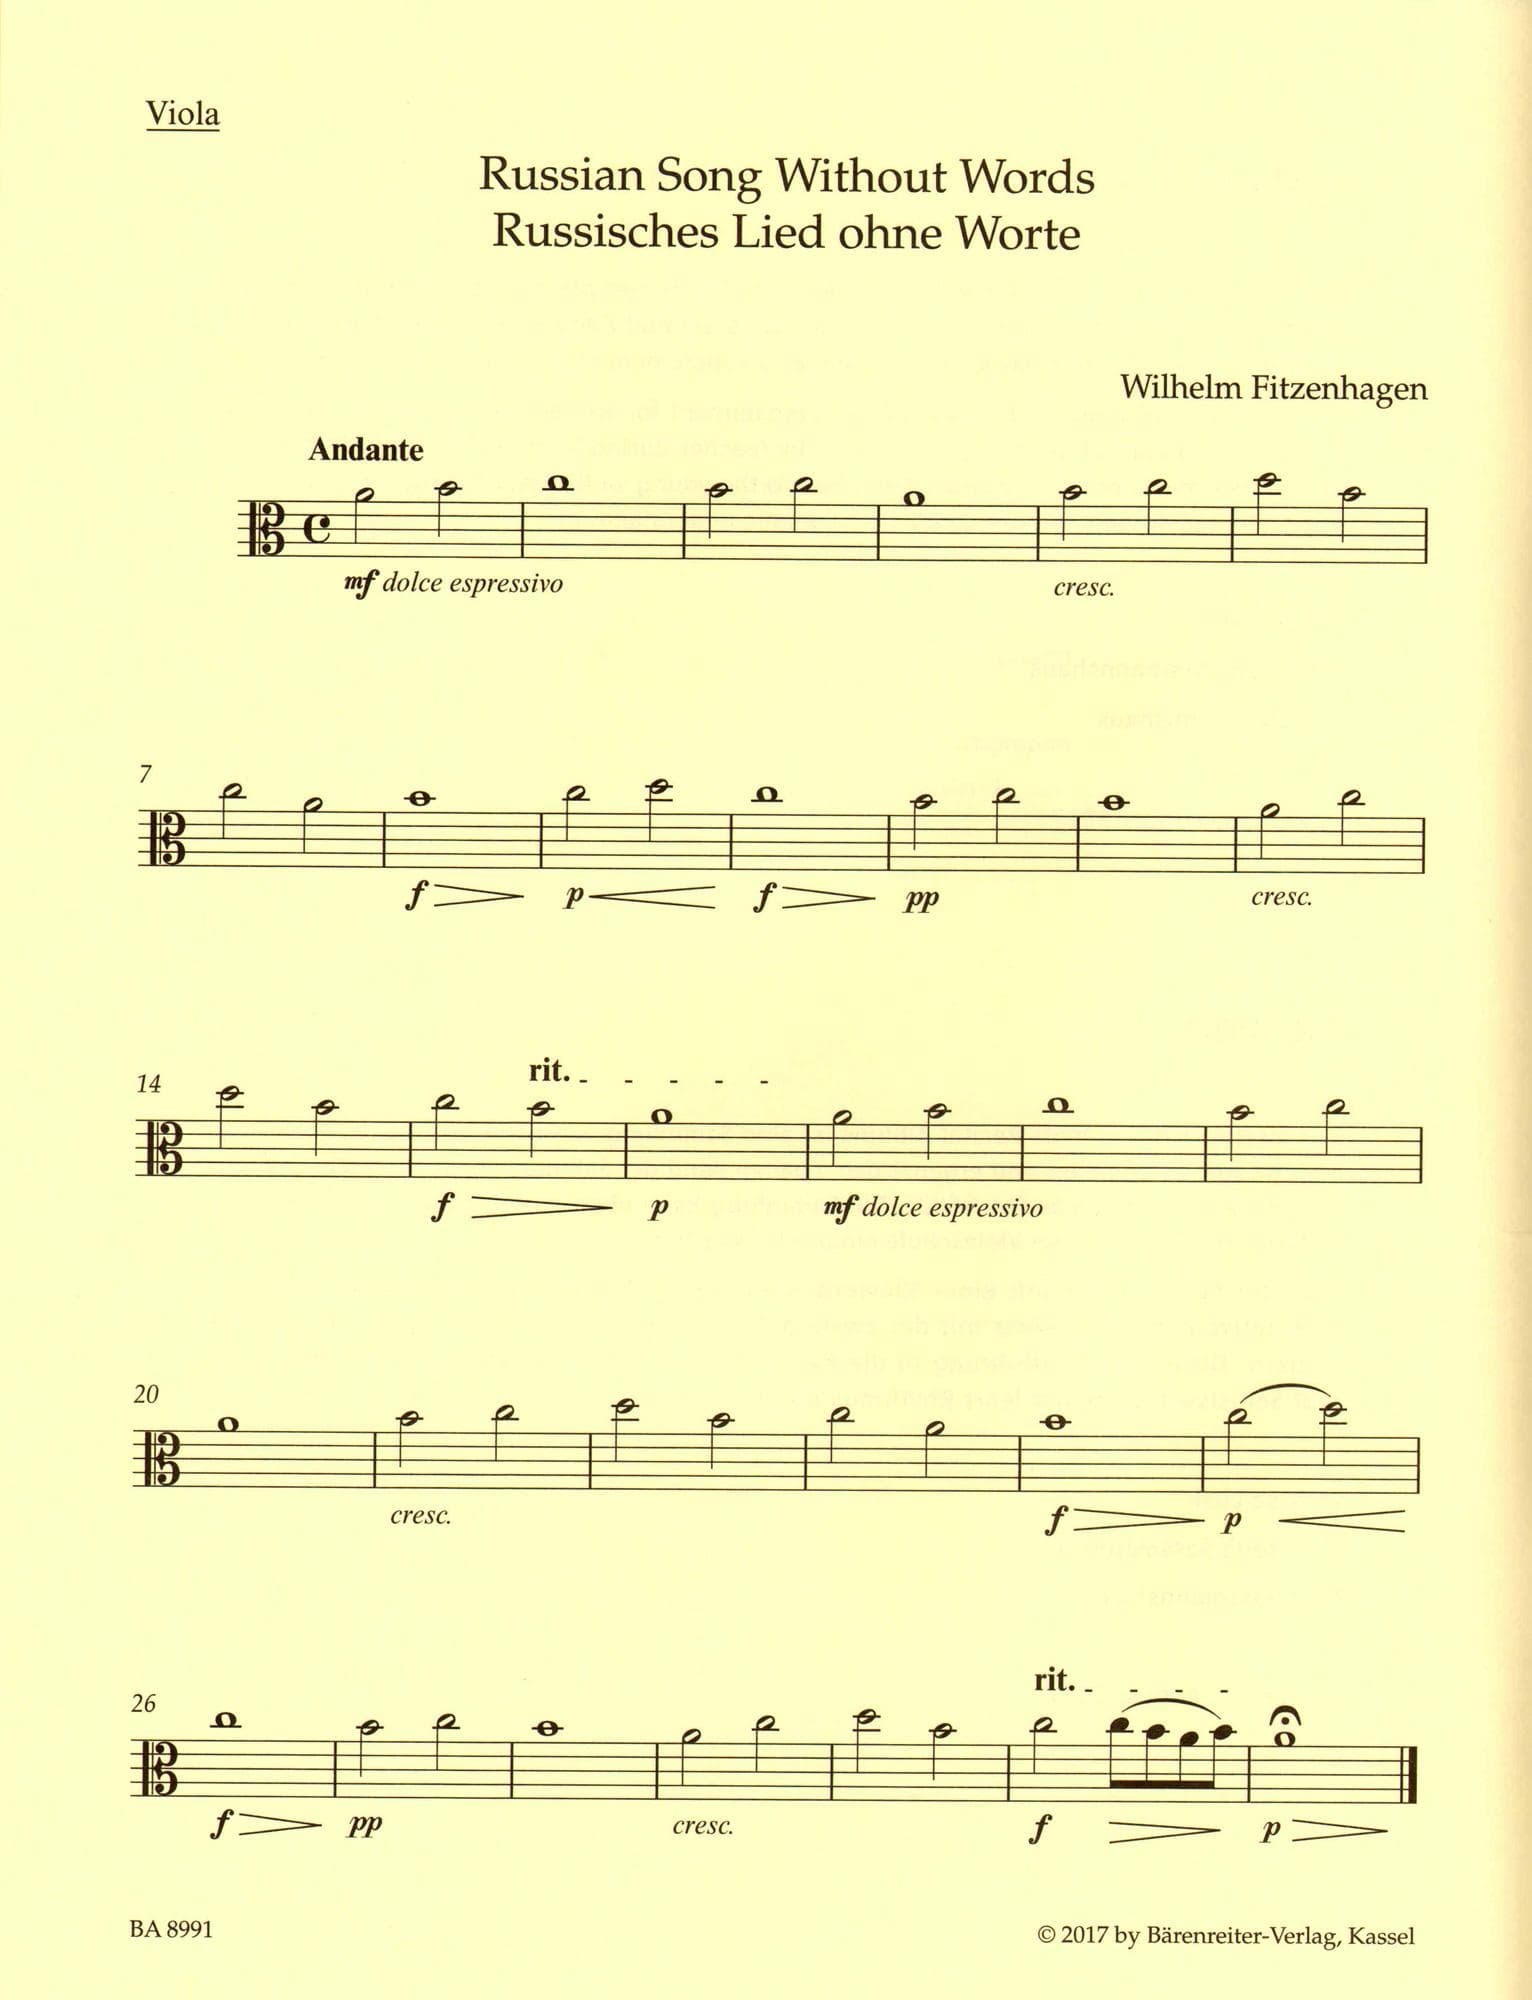 Sassmannshaus Viola Recital Album Volume 2